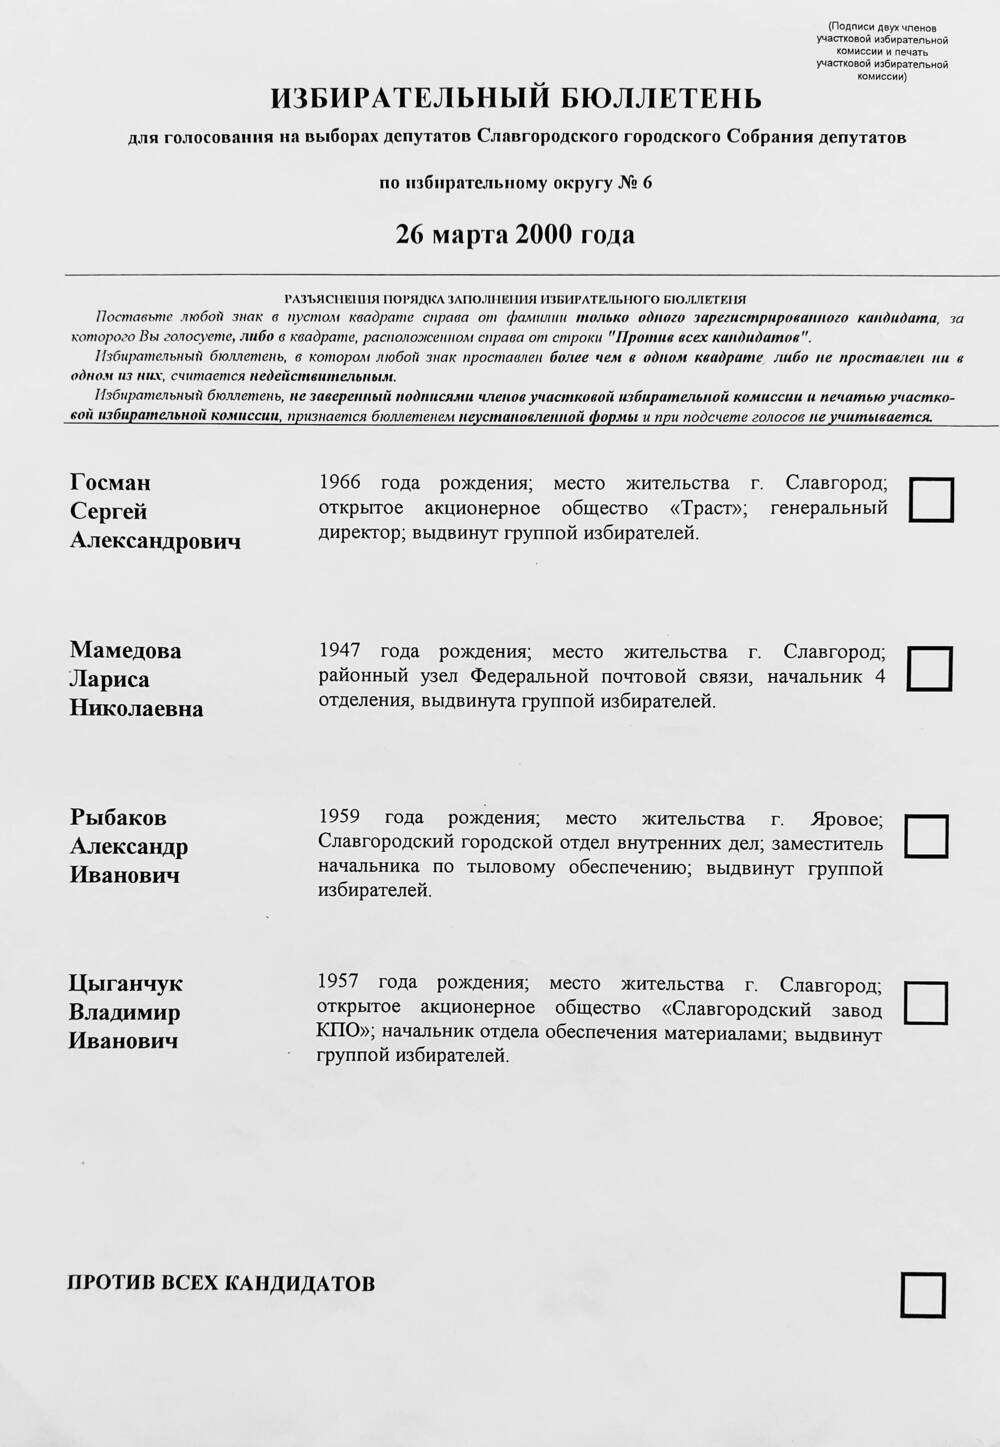 Бюллетень избирательный для голосования на выборах депутатов Славгородского городского Собрания депутатов по избирательному округу № 6 от 26 марта 2000 года.